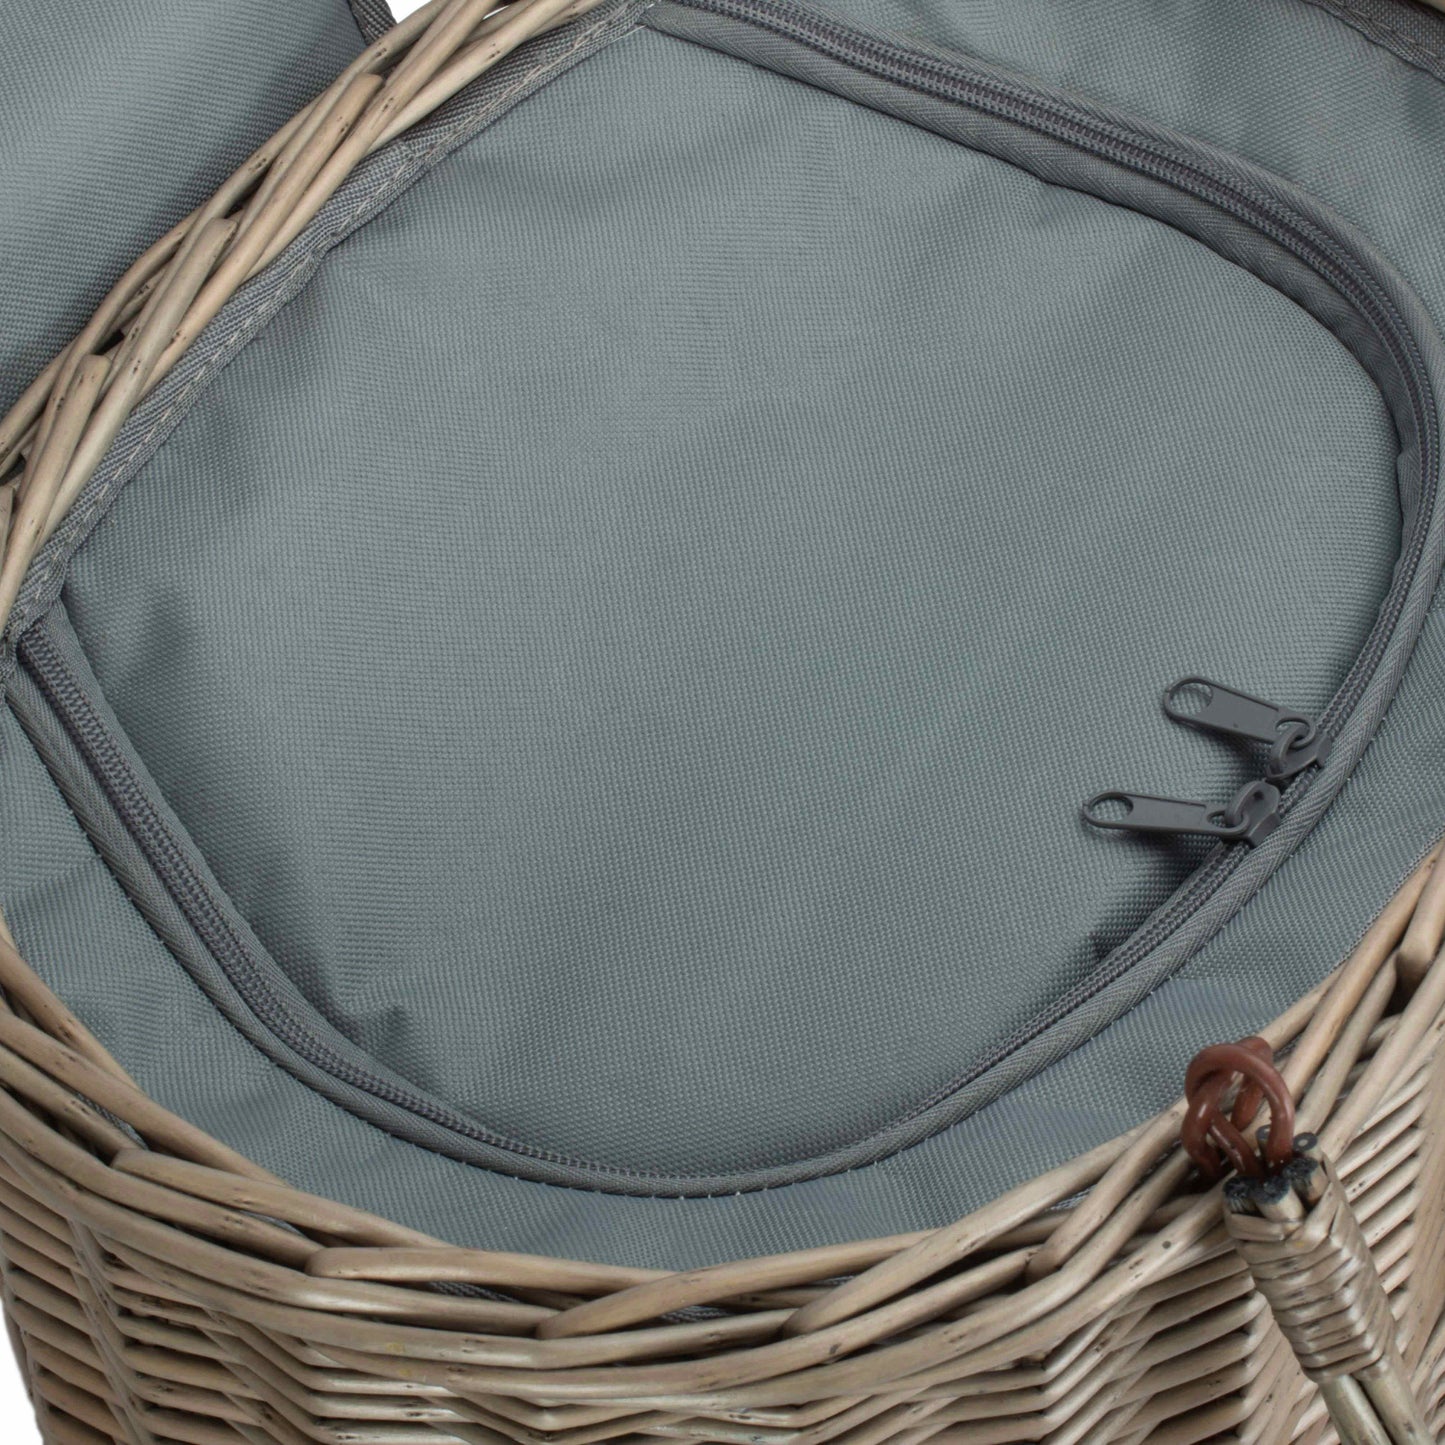 Oval Grey Chiller Hamper Basket